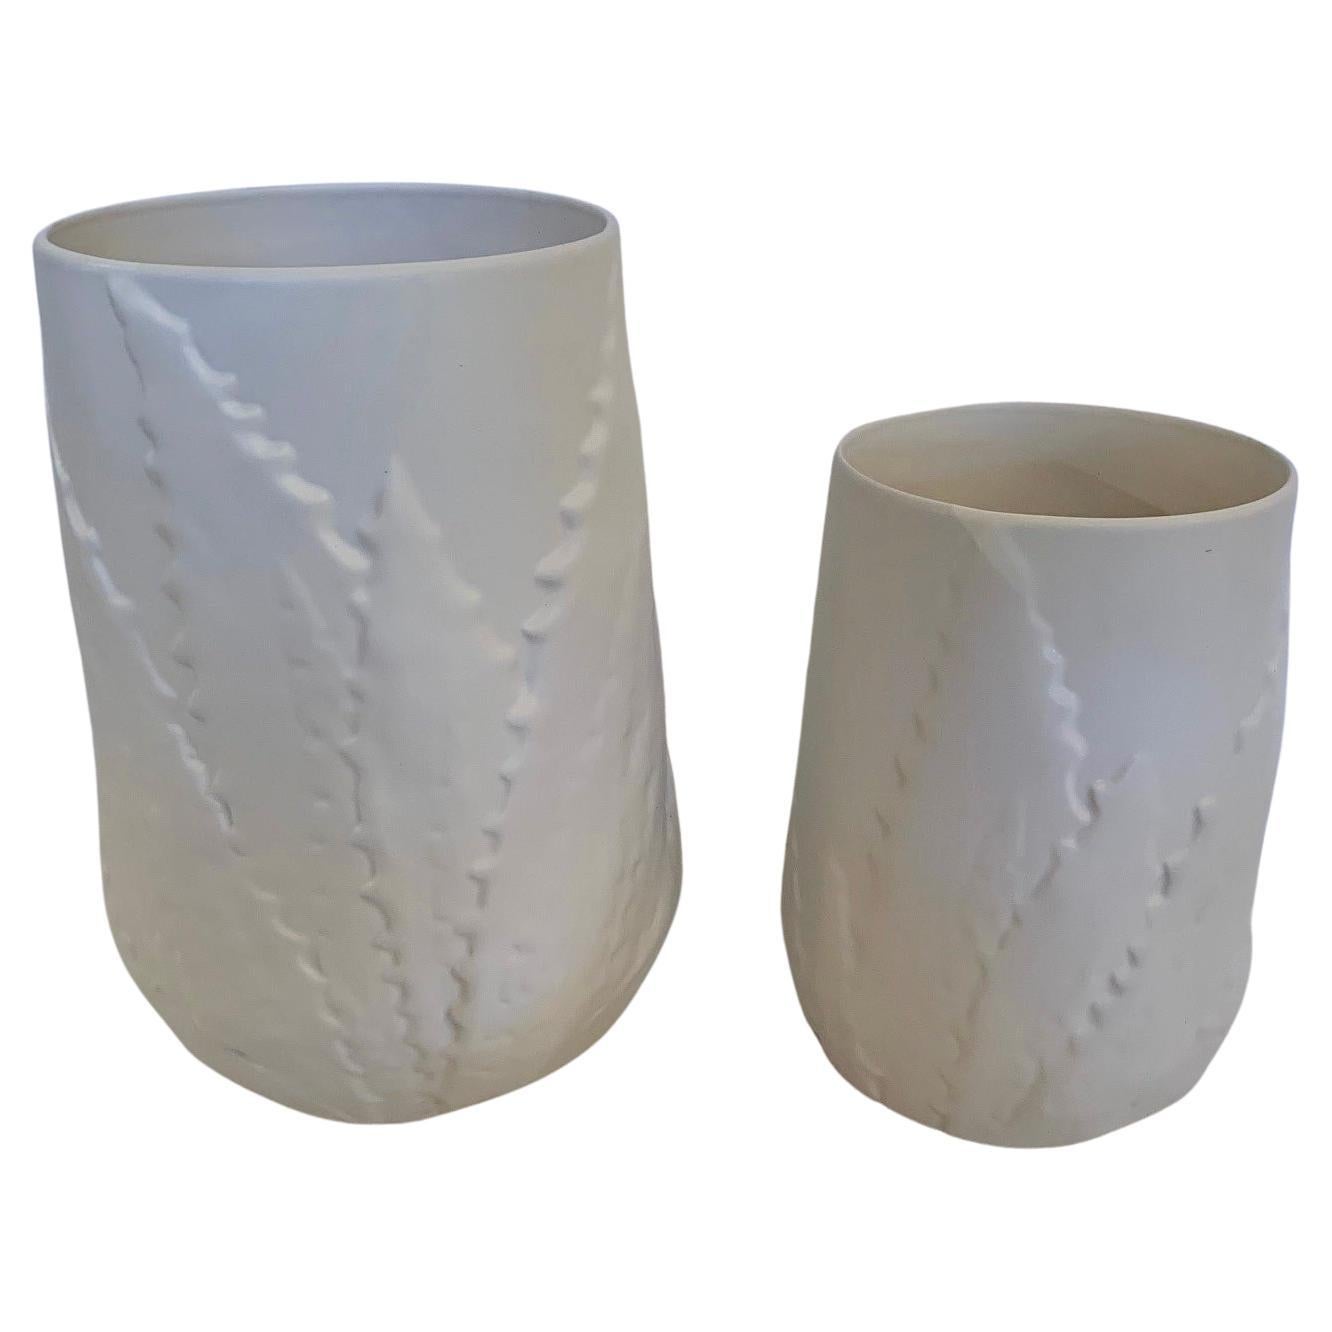 Beautiful Pair of White Ceramic Planters or Vases